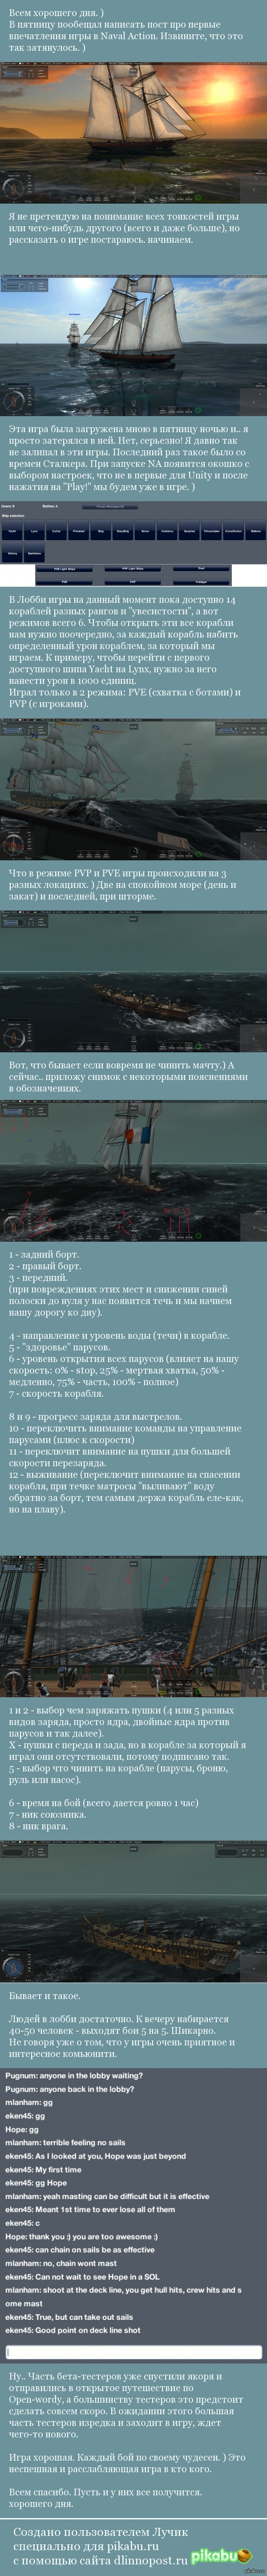  Naval Action ,  ,    <a href="http://pikabu.ru/story/naval_action__pokhozhe_gryadet_nastoyashchaya_morskaya_pesochnitsa_3294360">http://pikabu.ru/story/_3294360</a>